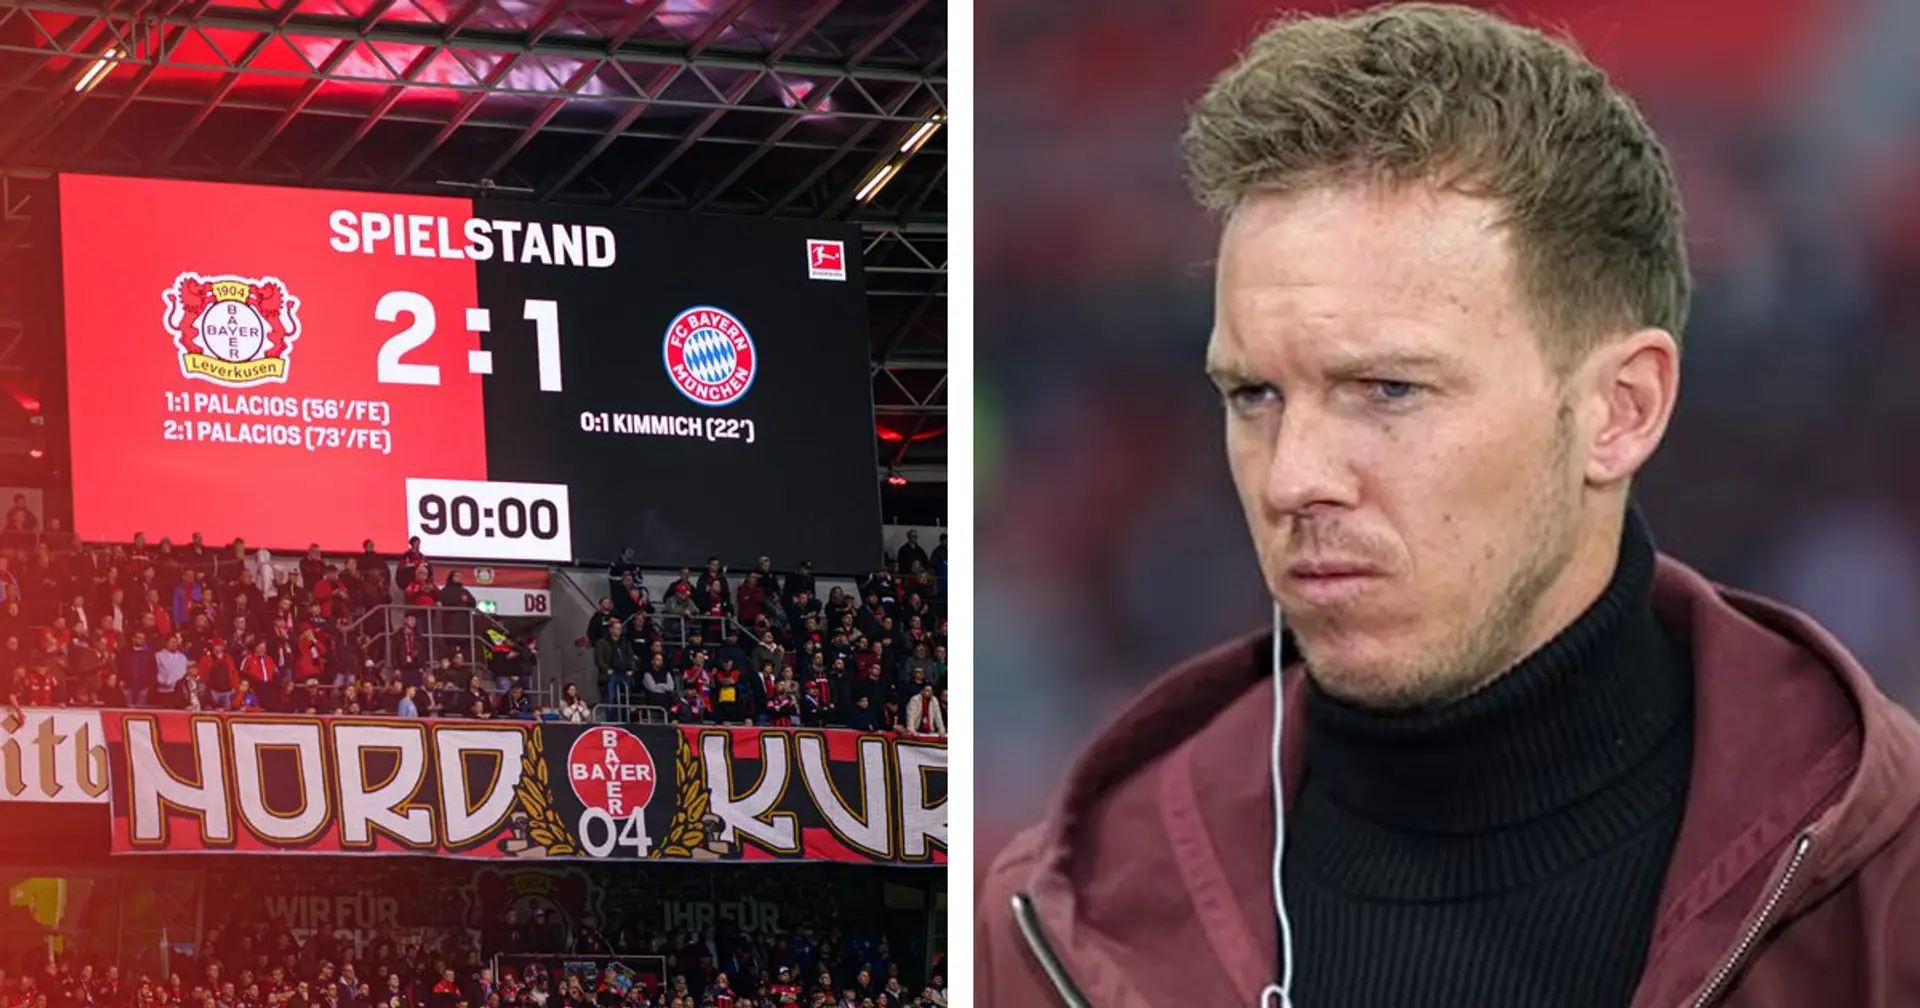 "Selbst wenn wir nicht Meister werden, geht die Welt nicht unter": Bayern-Fan bittet um mehr Unterstützung für das Team